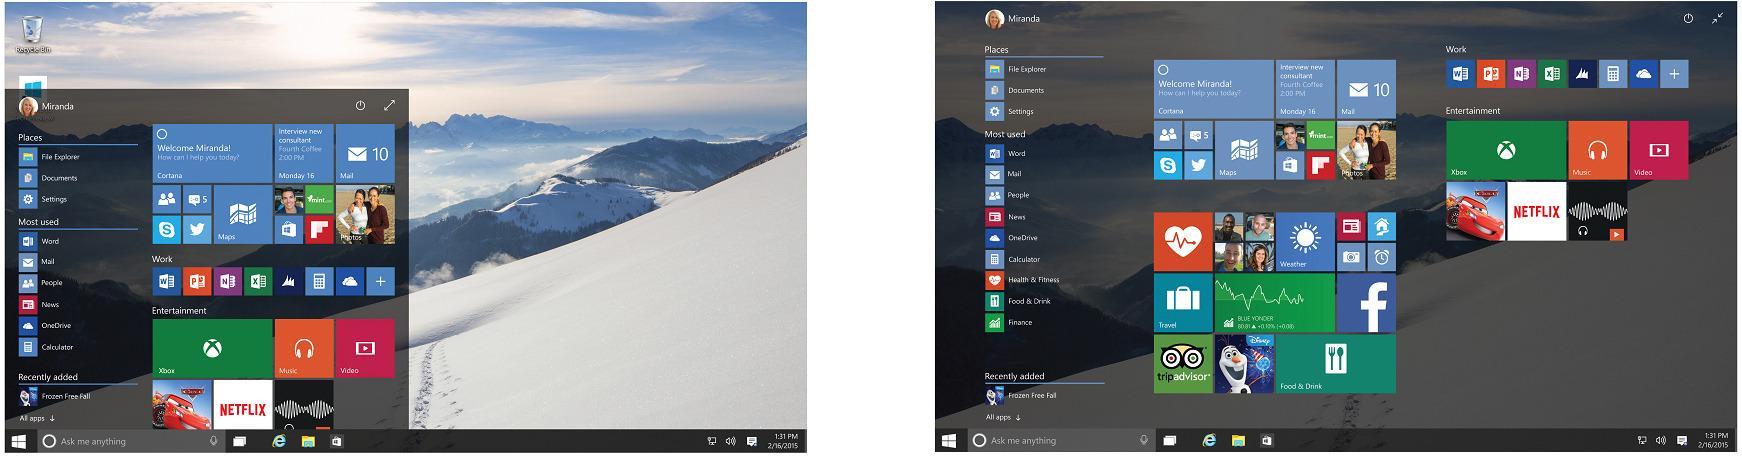 Den nye startmenyen tar med seg det beste fra Windows 7 og Windows 8. Den har krympet, men kan blåses opp over hele skjermen om du ønsker full oversikt.